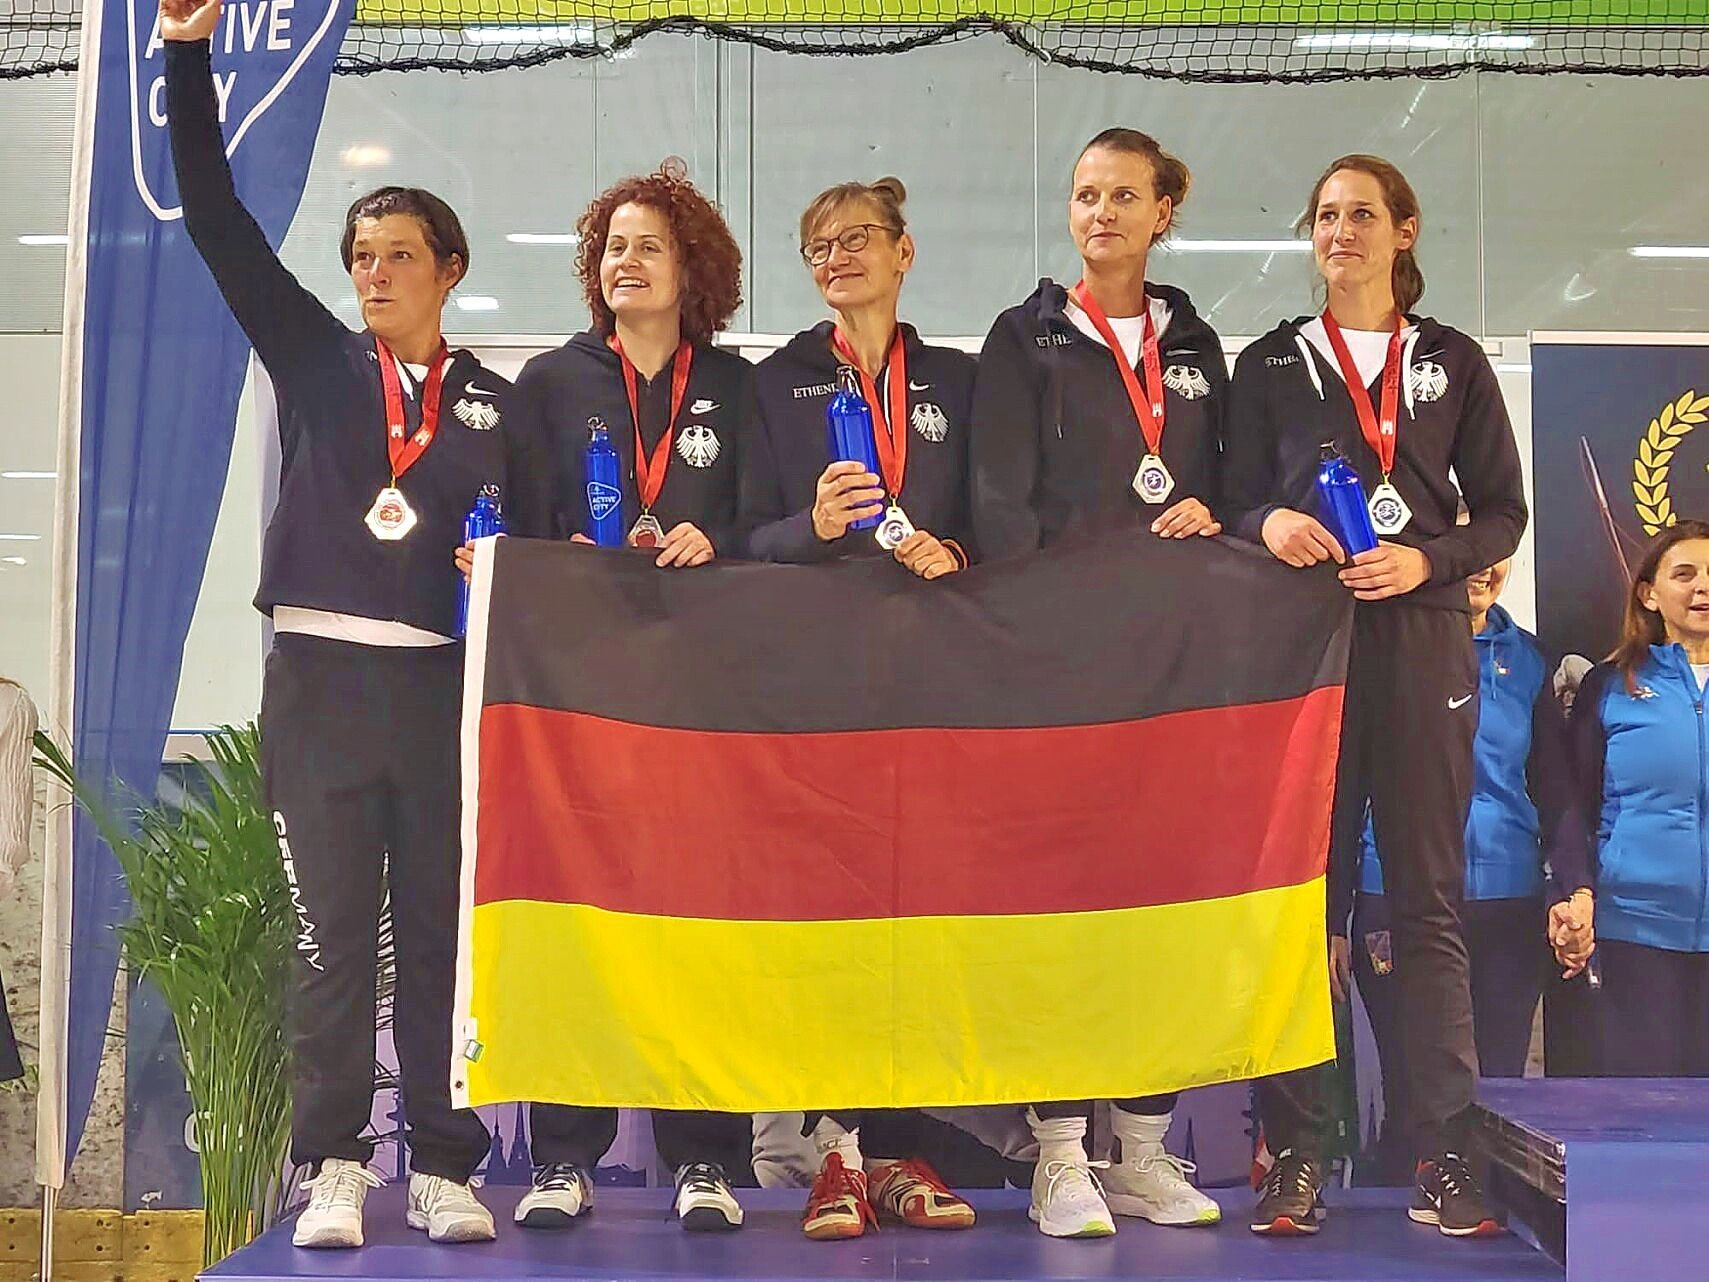 FECHTEN Karen Dömeland gewinnt ihre erste internationale Medaille